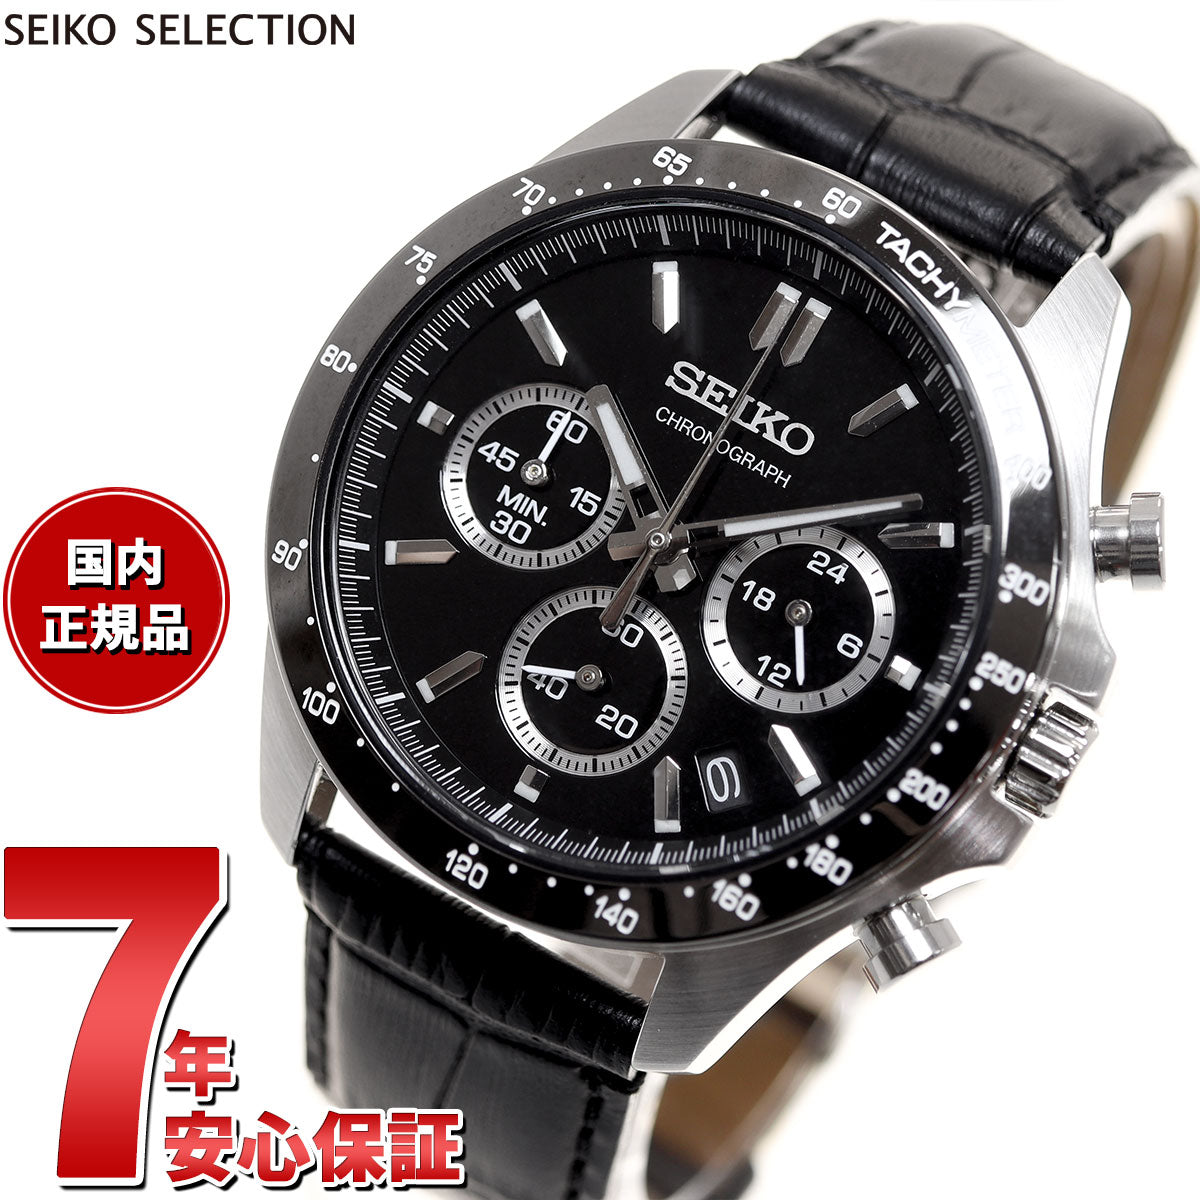 セイコー セレクション SEIKO SELECTION 8Tクロノ SBTR021 腕時計